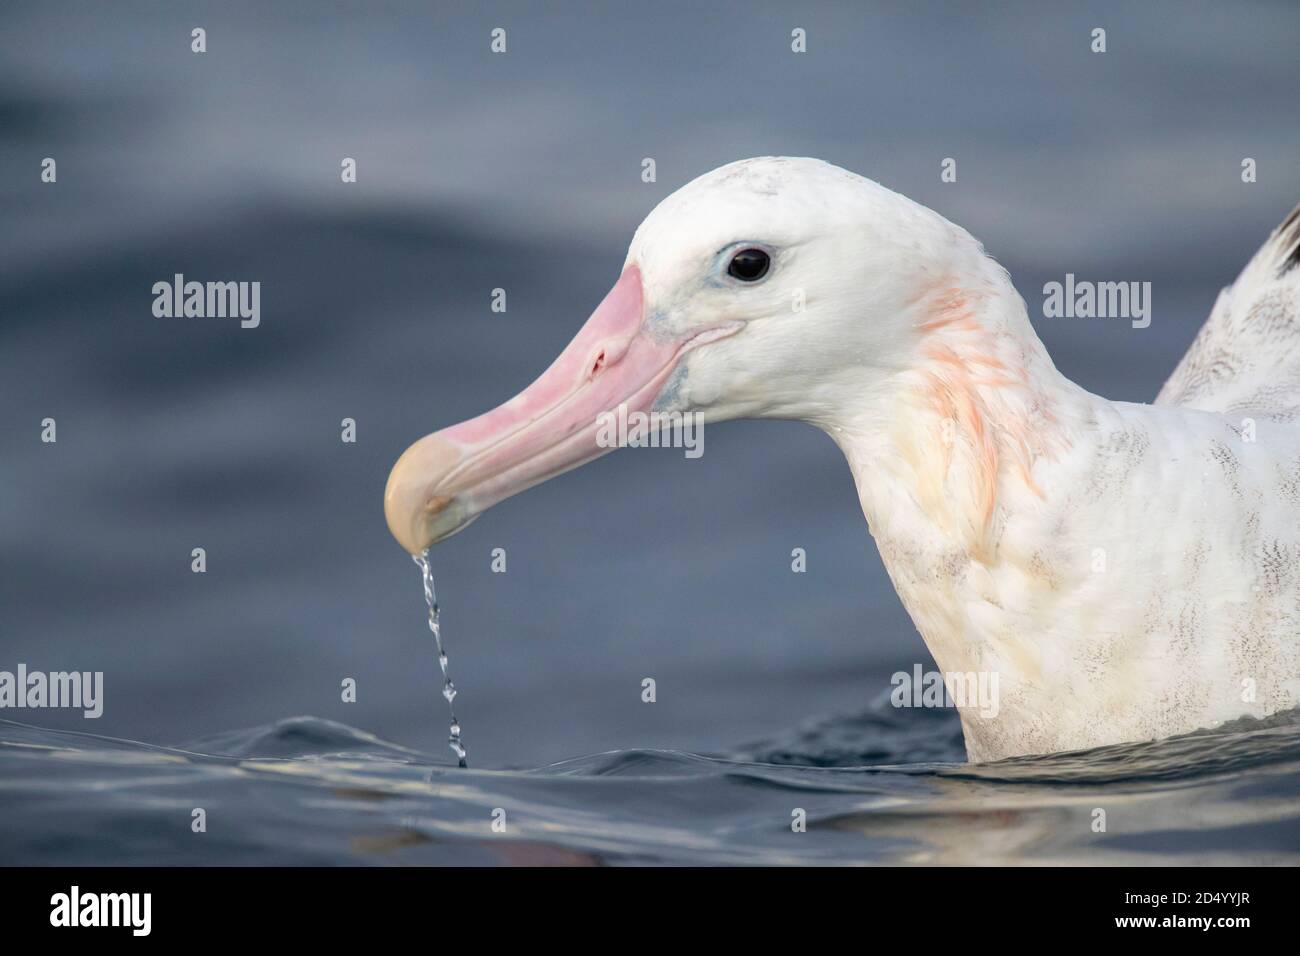 Albatros de Gibson (Diomedea gibsoni), portrait sur l'eau, eau s'écoulant de son énorme bec rose, Nouvelle-Zélande, île du Sud, Kaikoura Banque D'Images